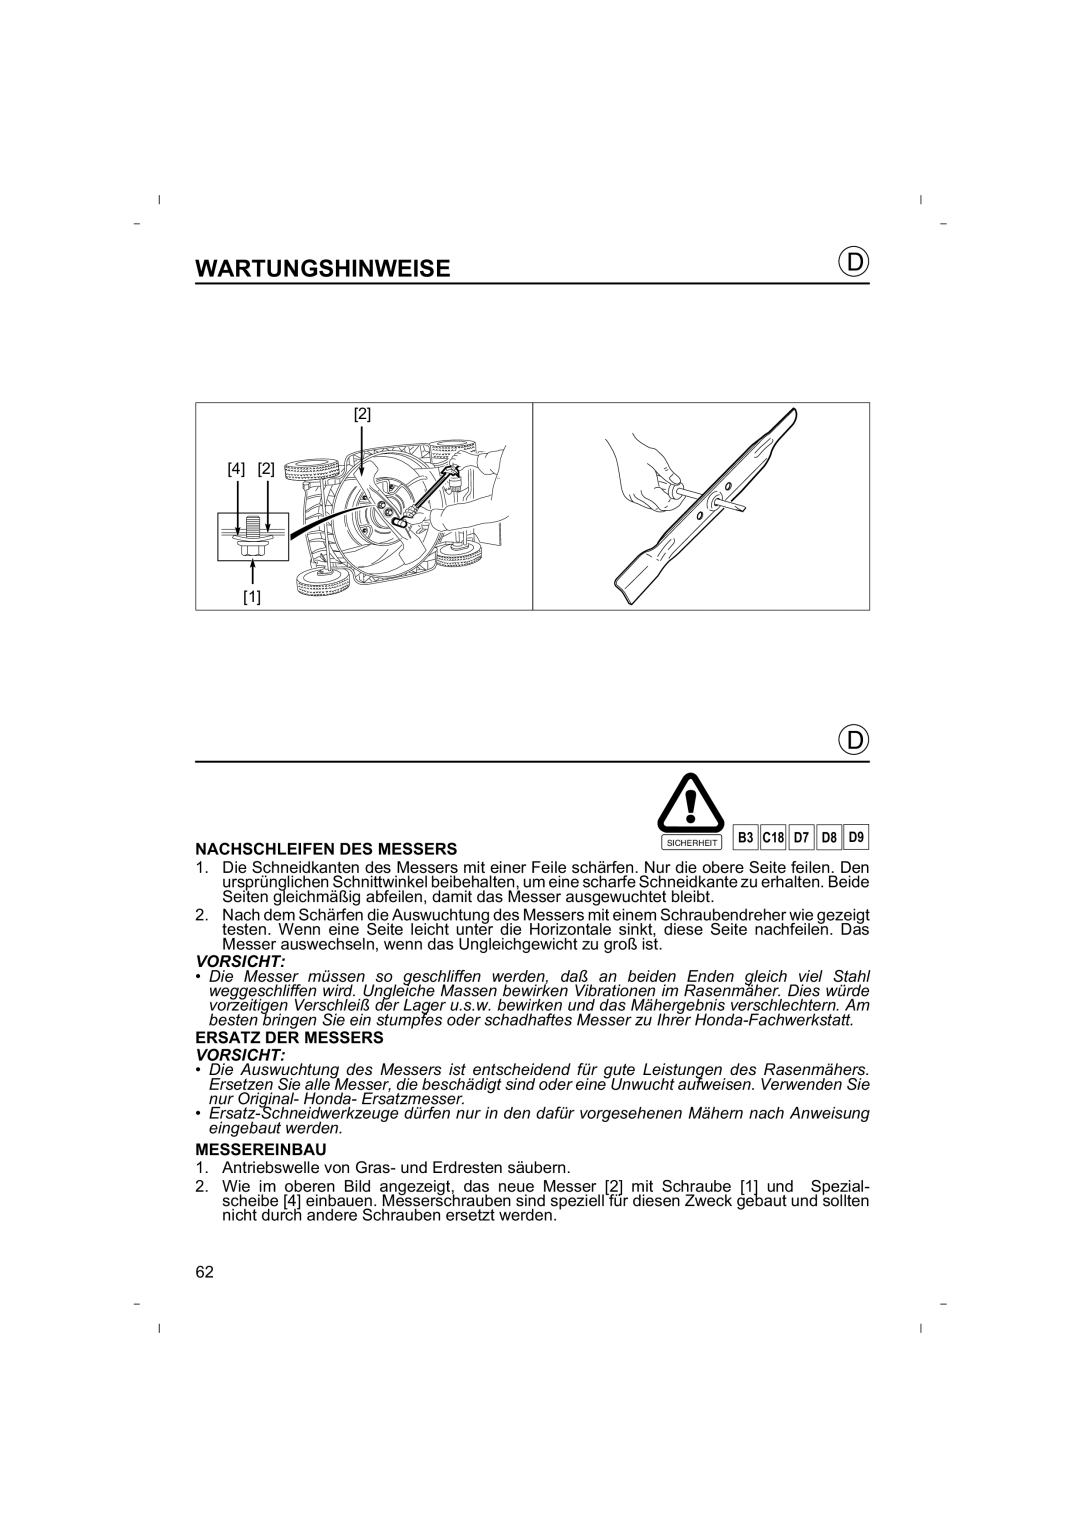 Honda Power Equipment HRB425C owner manual Wartungshinweise, Nachschleifen Des Messers, Ersatz Der Messers, Messereinbau 